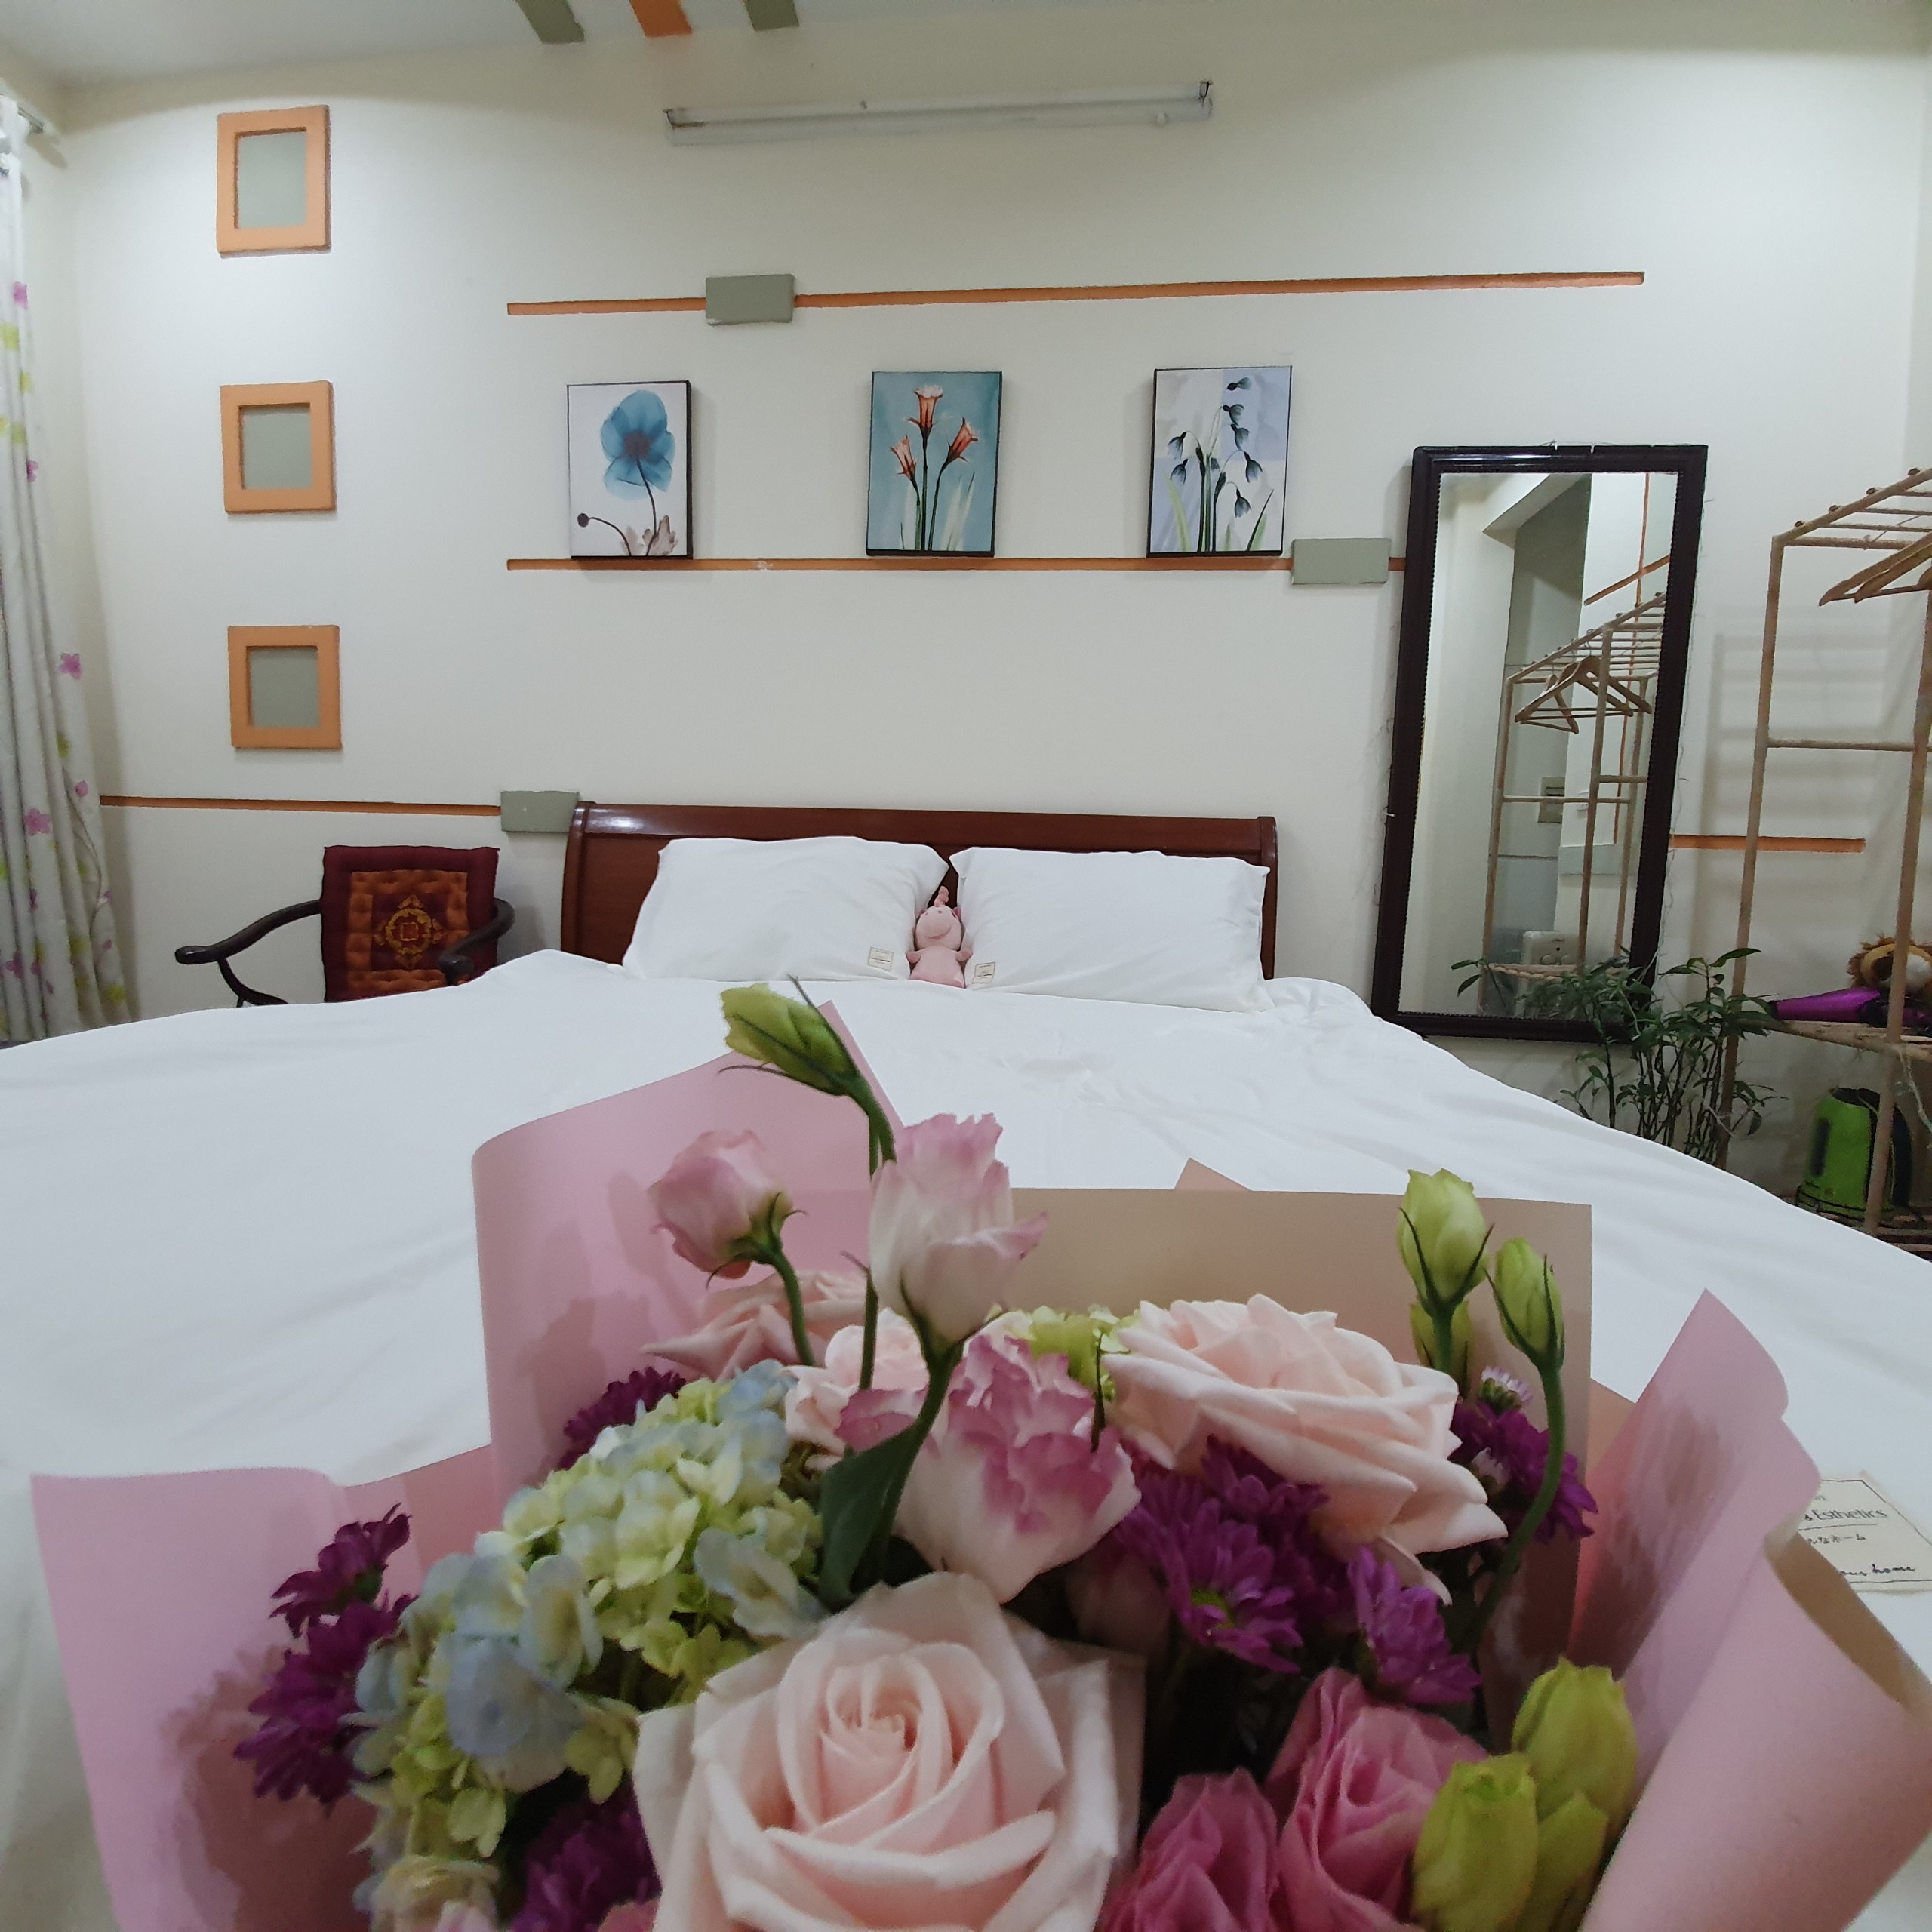 Nhà riêng chính chủ cho thuê tại phố Thụy Khuê, quận Ba Đình với 5 phòng ngủ full đồ hiện đại